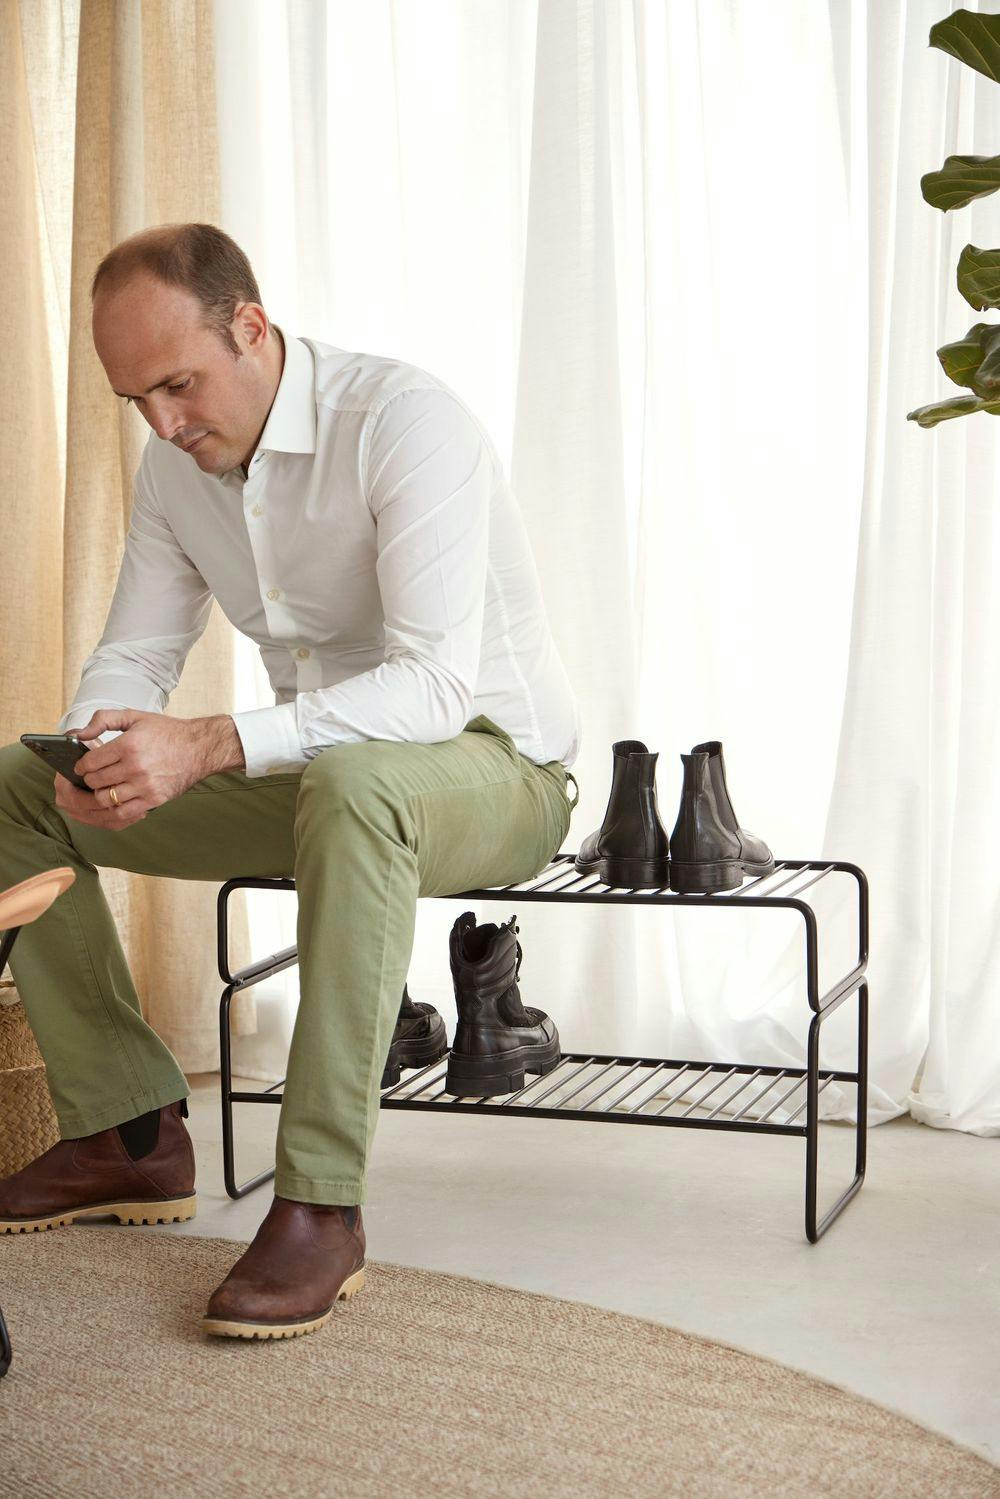 Design-Schuhregal mit einer Person darauf sitzend